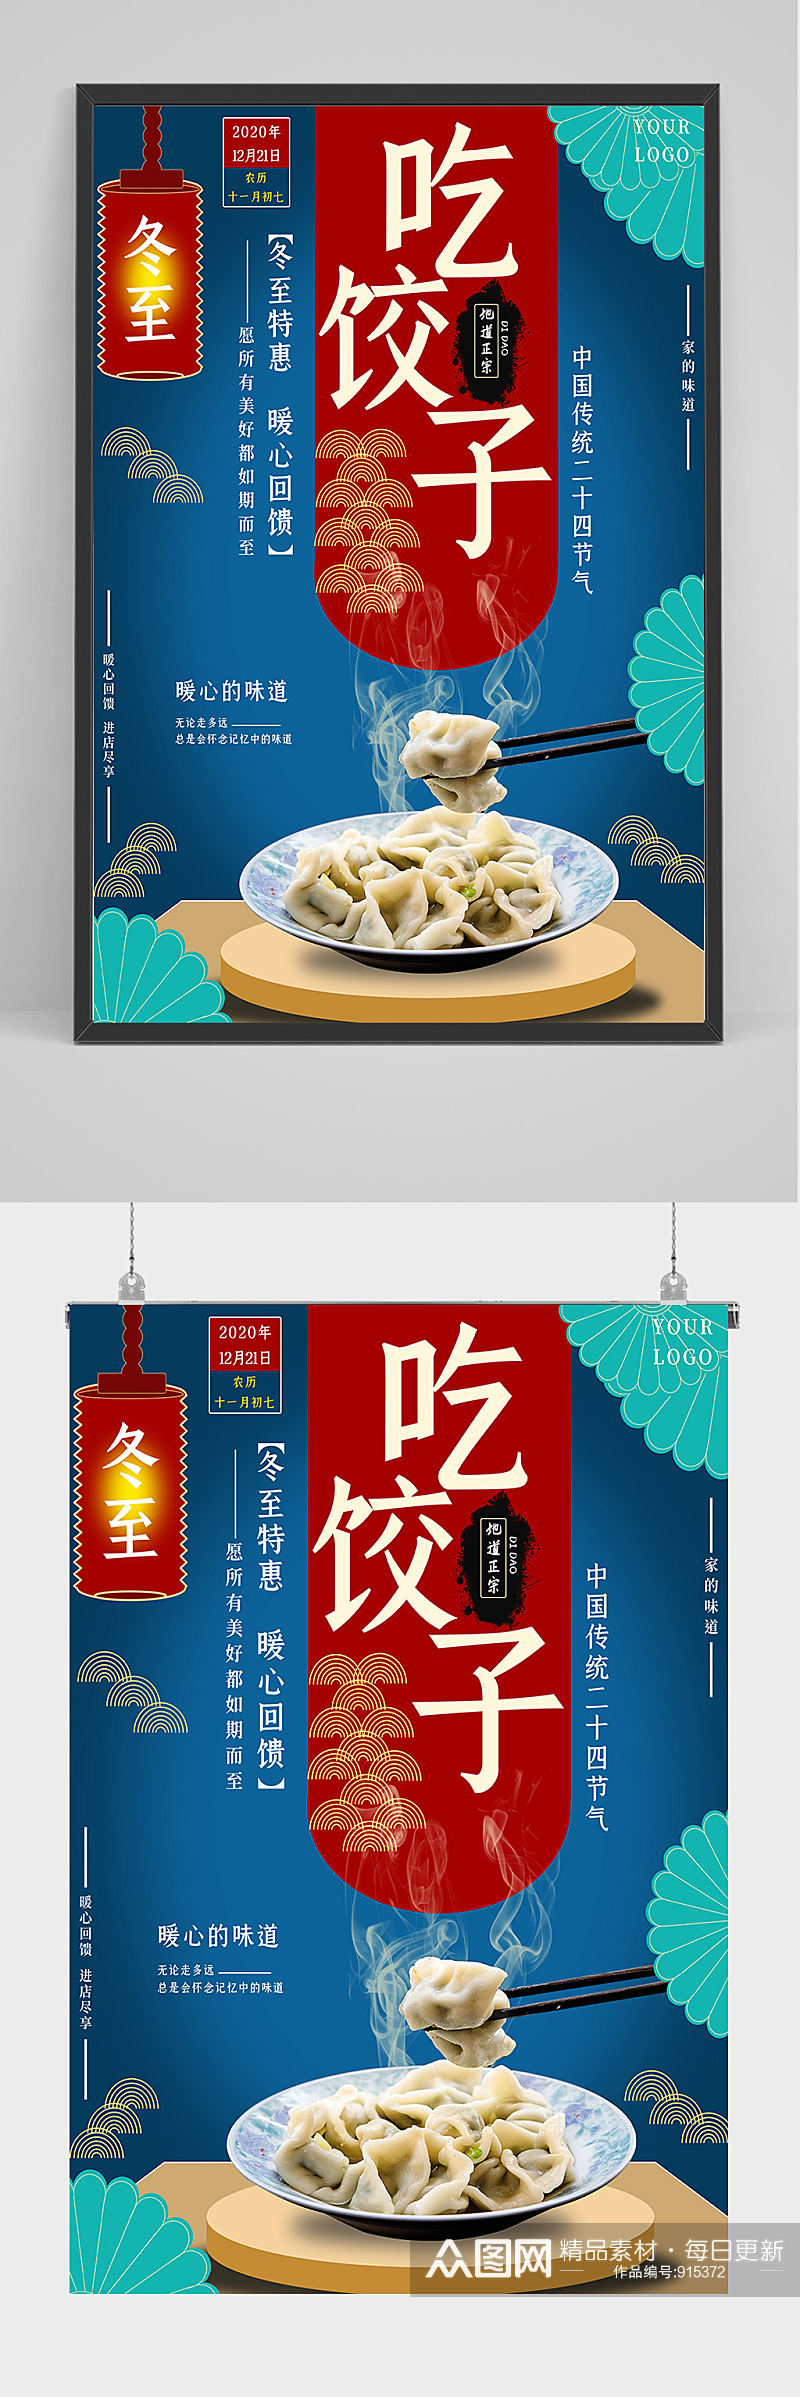 冬至特惠吃饺子海报设计素材